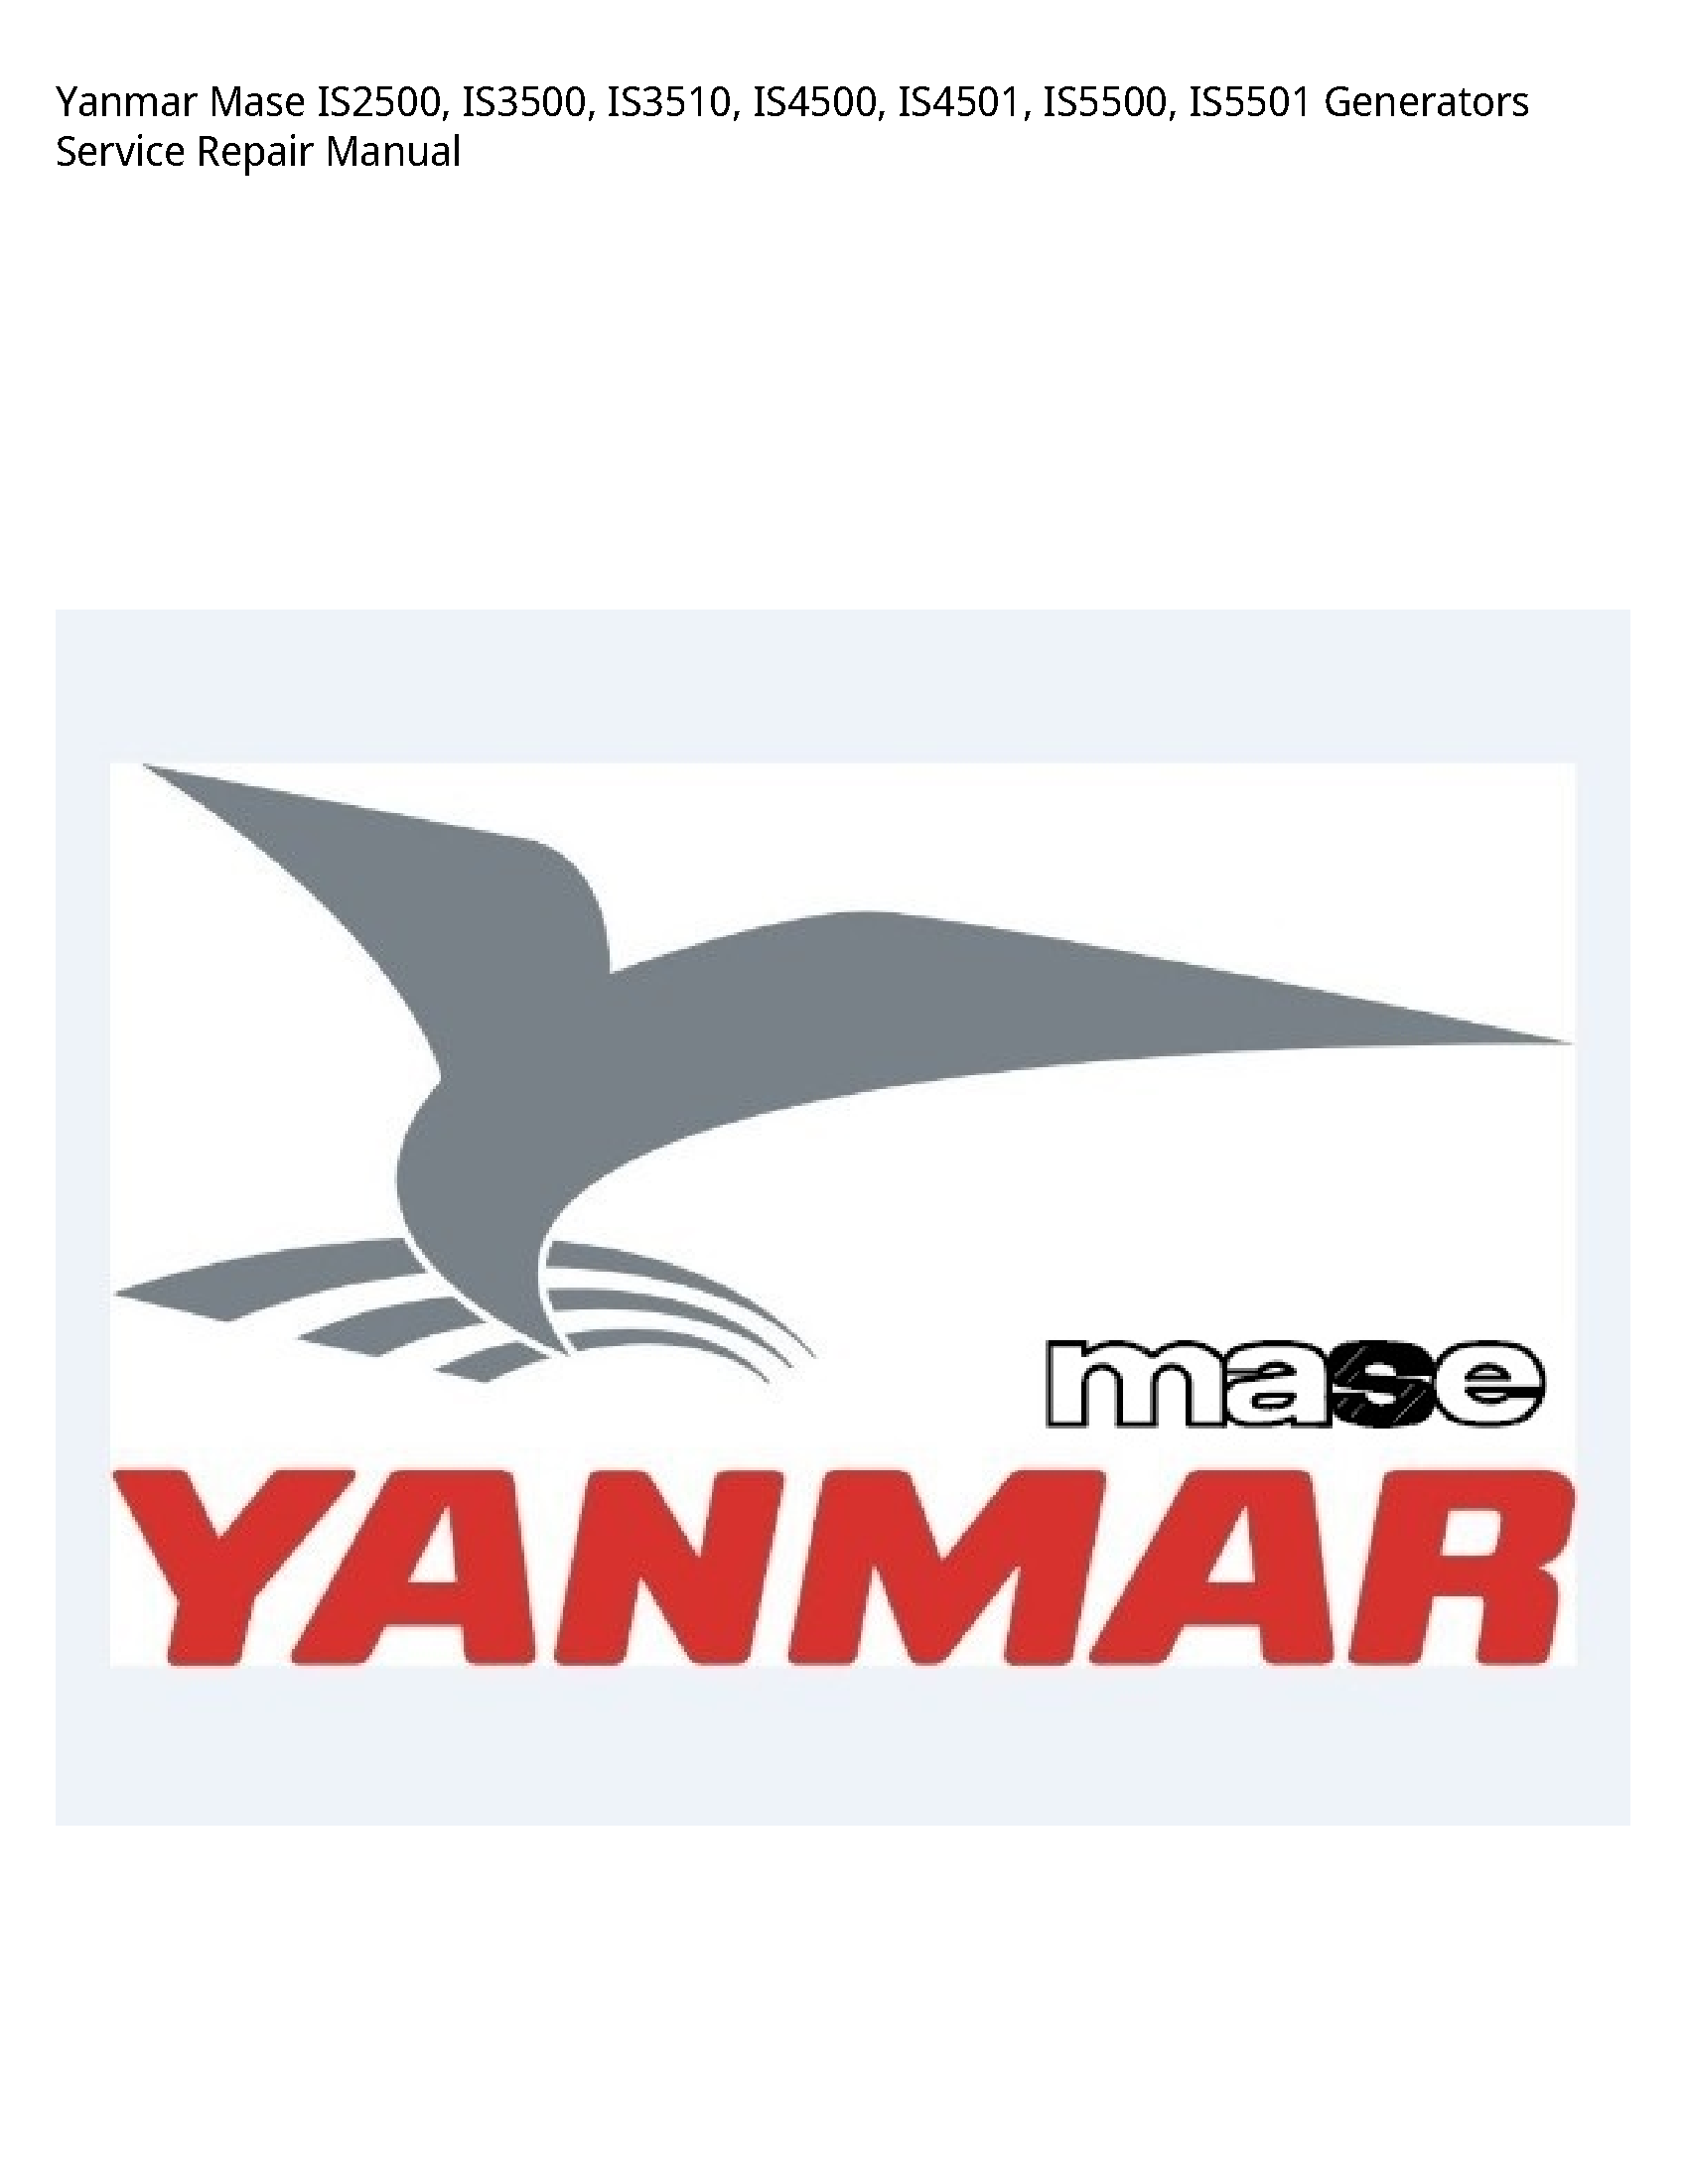 Yanmar IS2500 Mase Generators manual